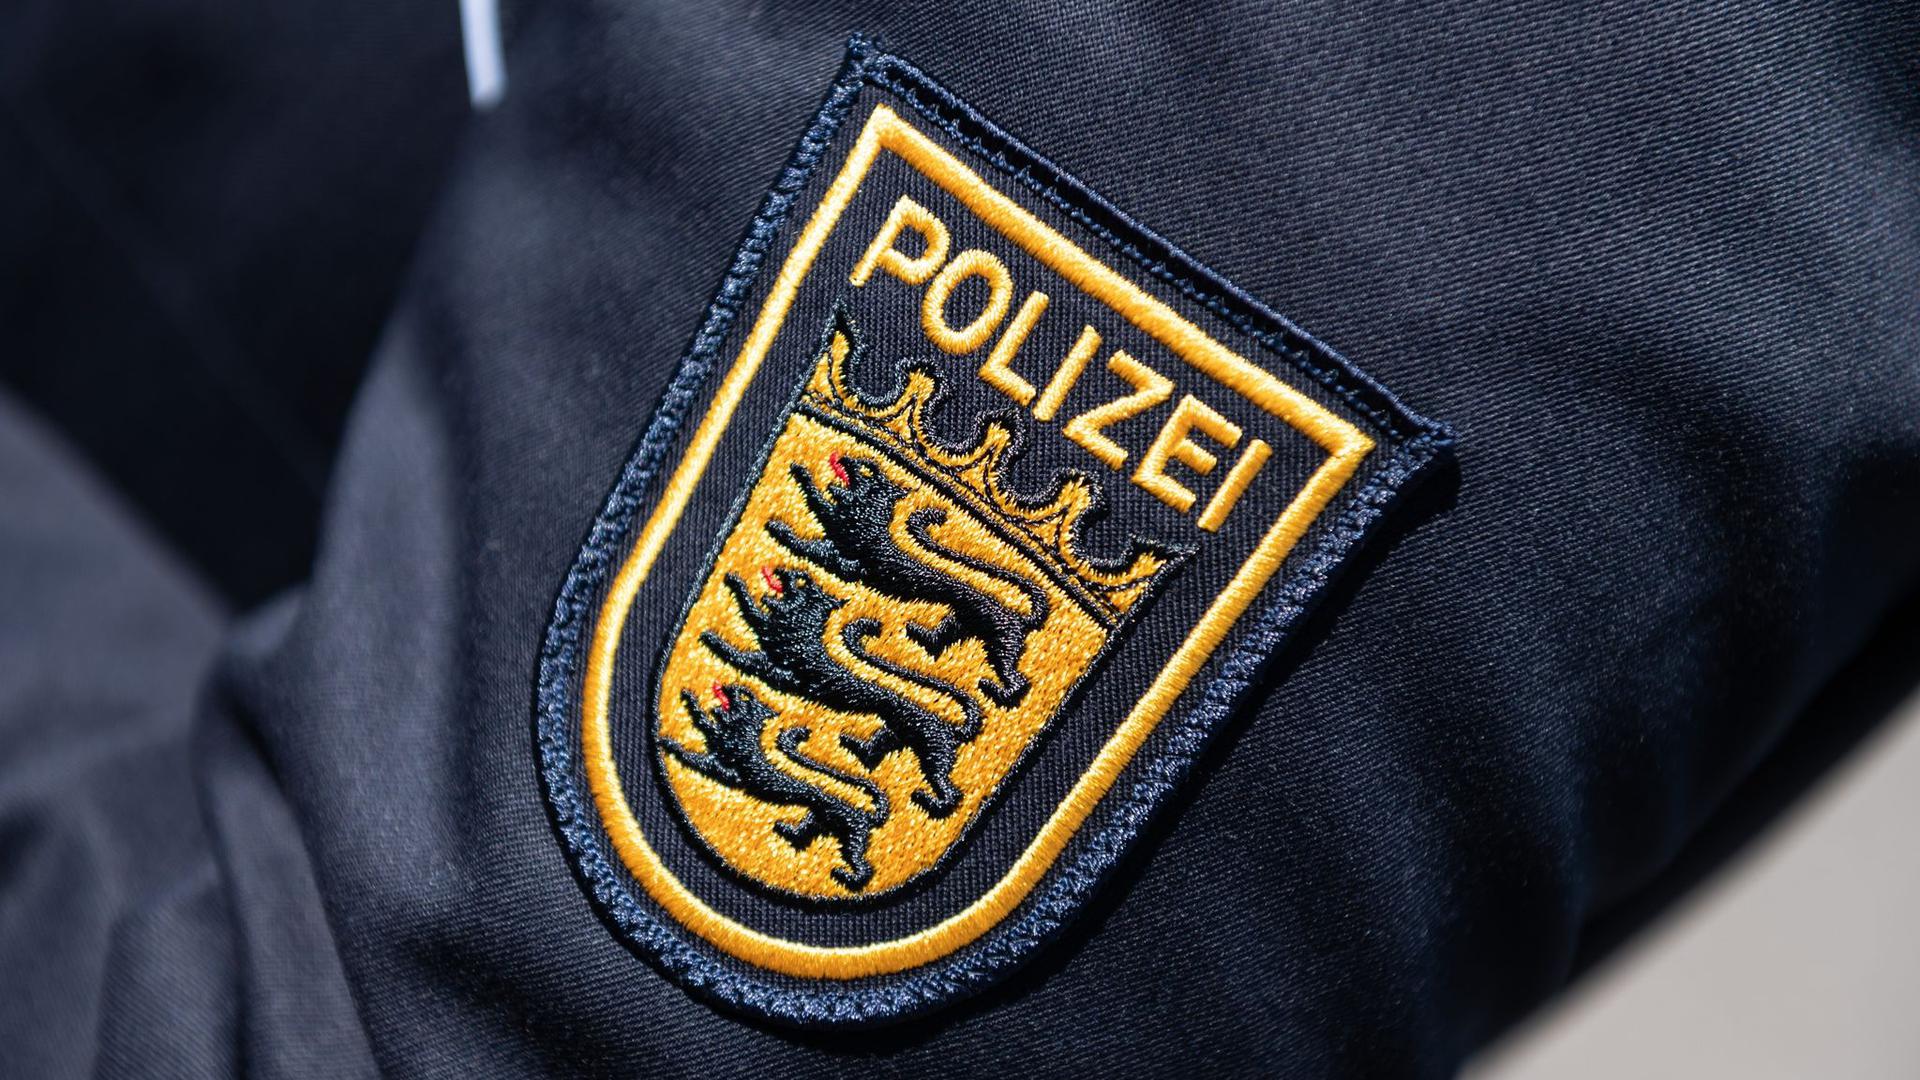 Das Wappen der Polizei Baden-Württemberg auf der Uniform einer Beamtin.